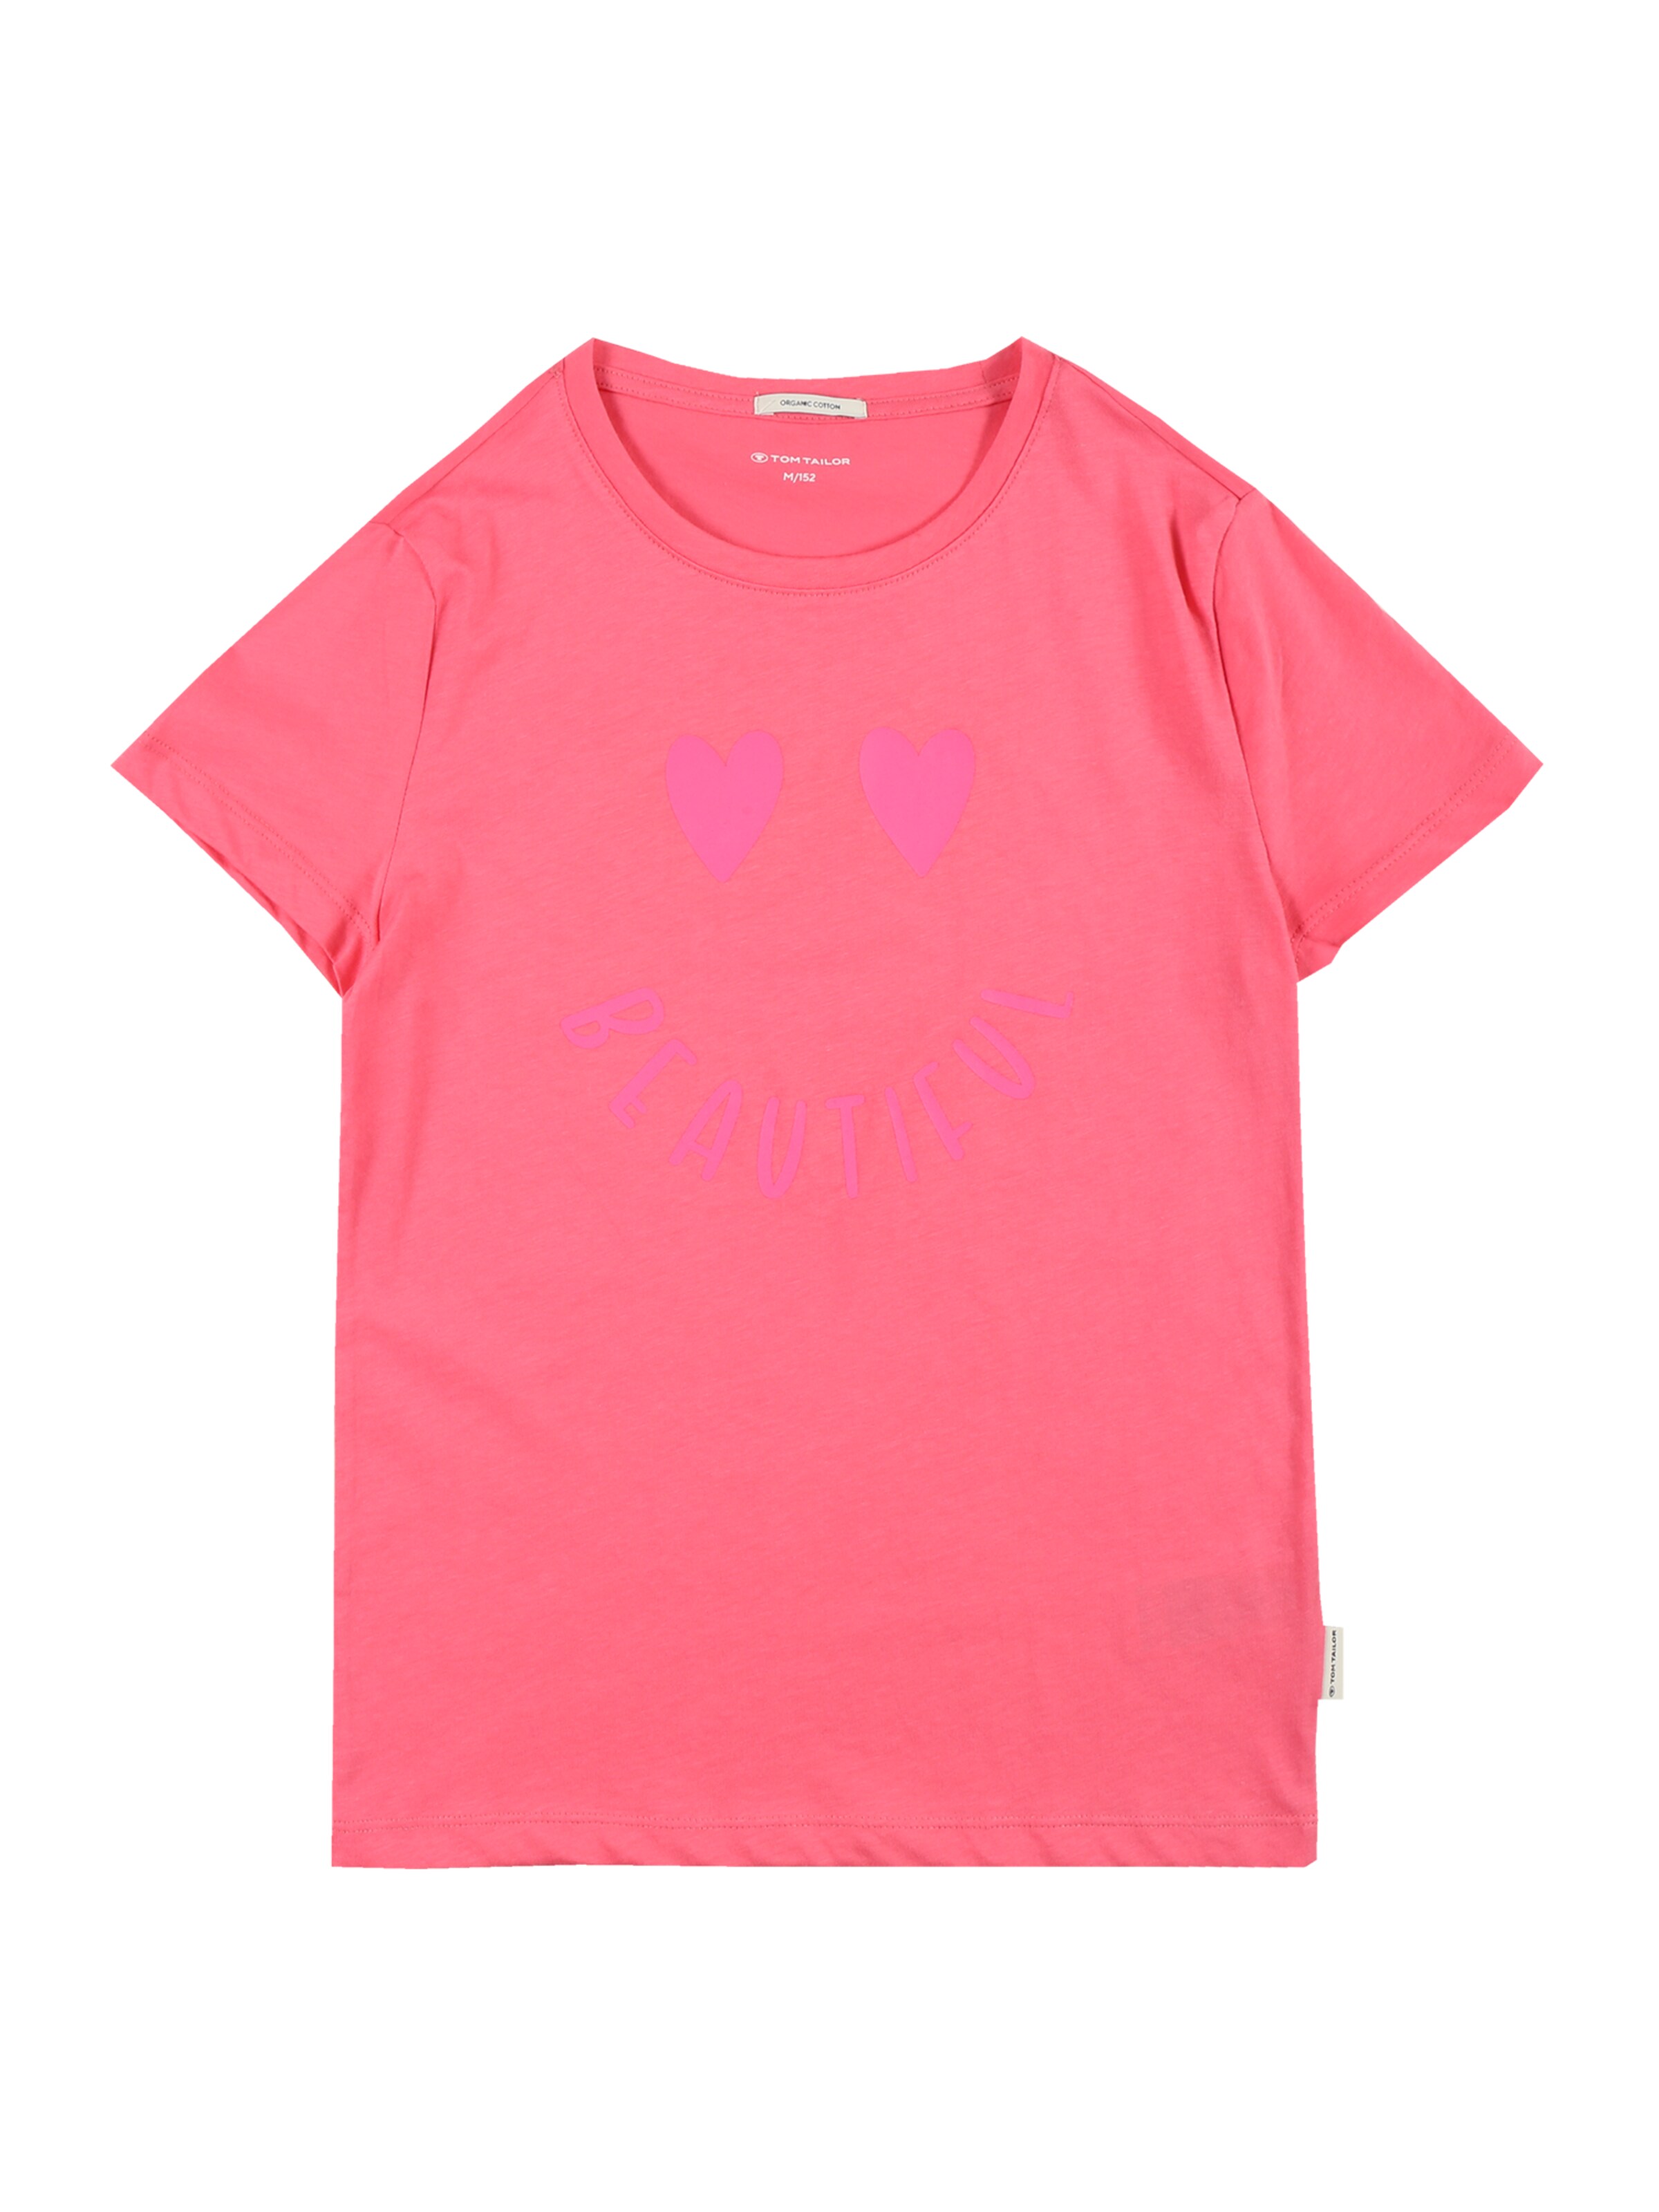 Kinder Teens (Gr. 140-176) TOM TAILOR T-Shirt in Pink, Hellpink - SR73461